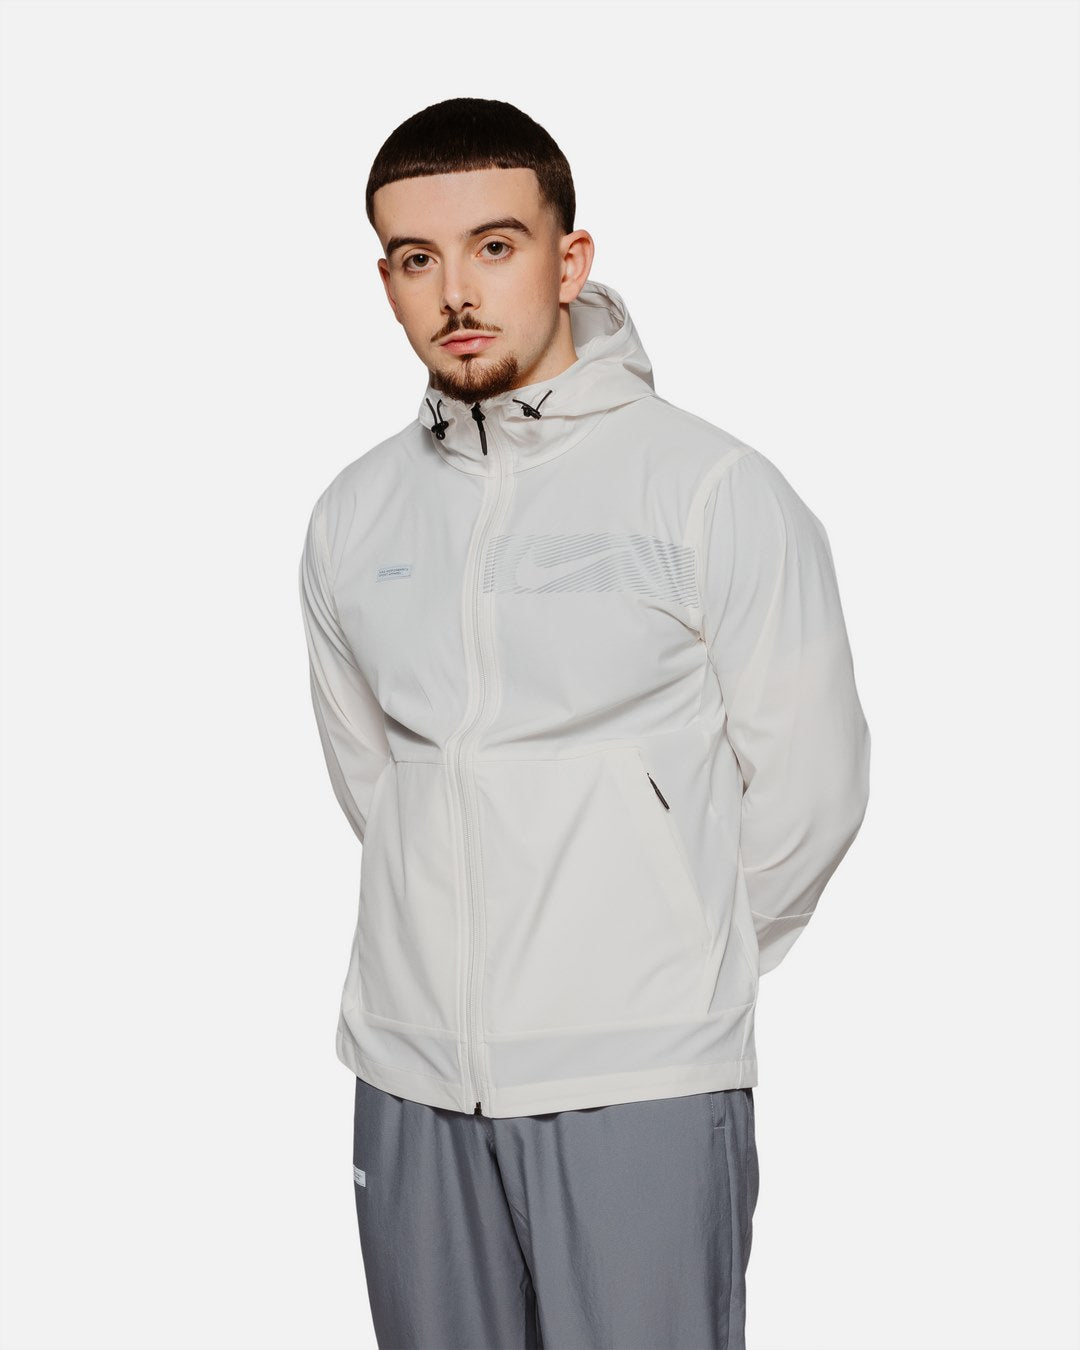 Nike Unlimited Jacket - White